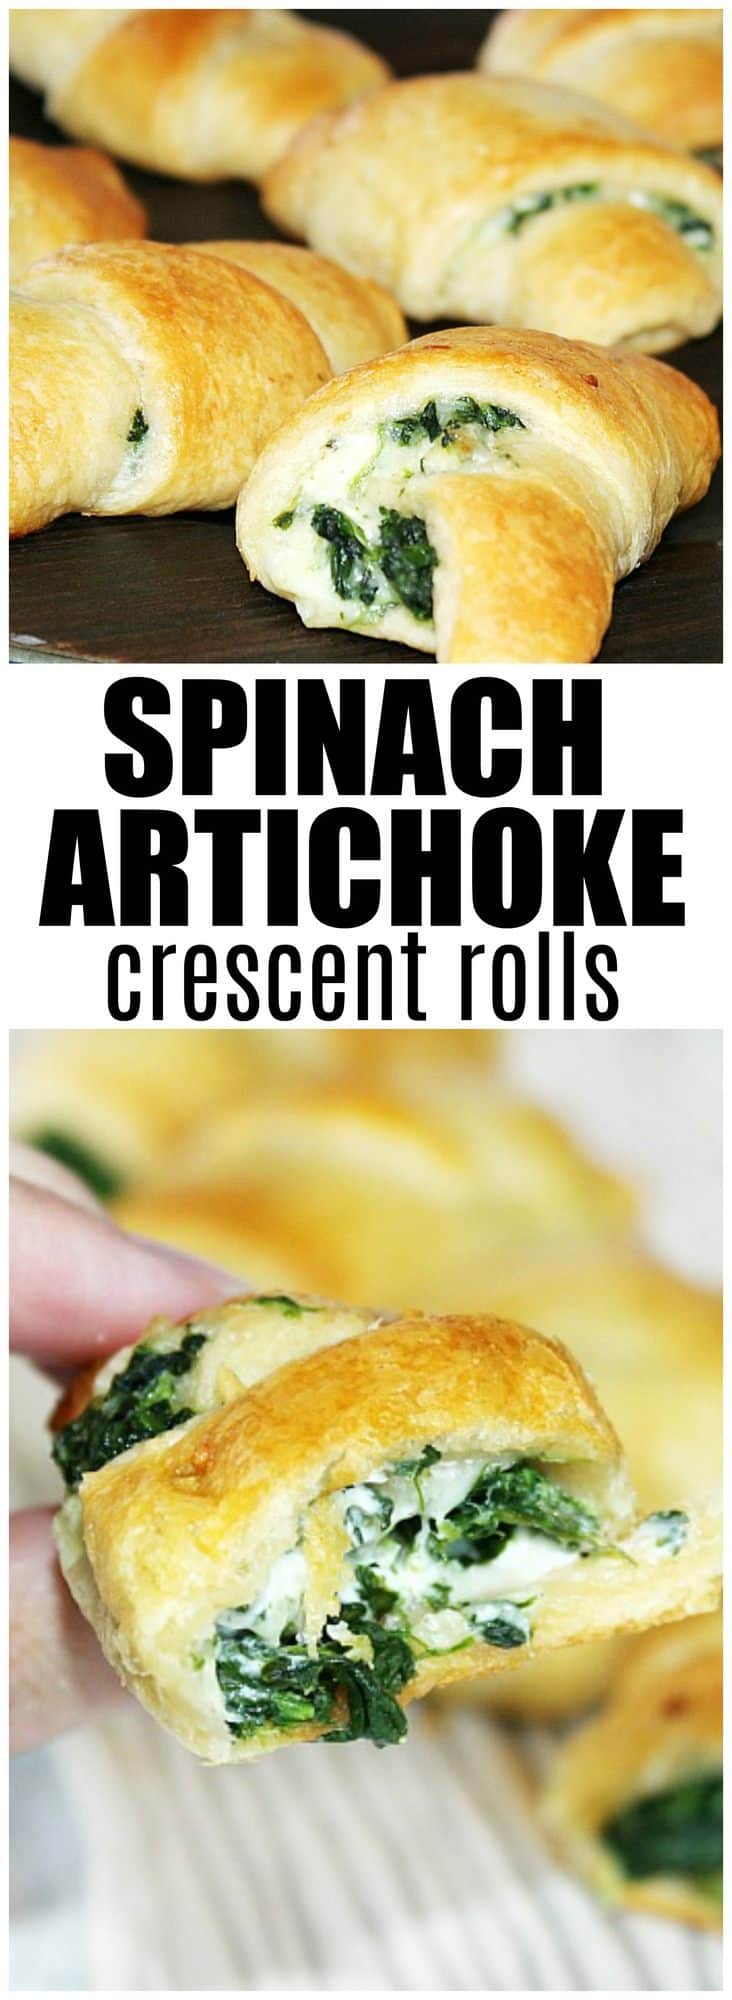 spinach artichoke crescent rolls